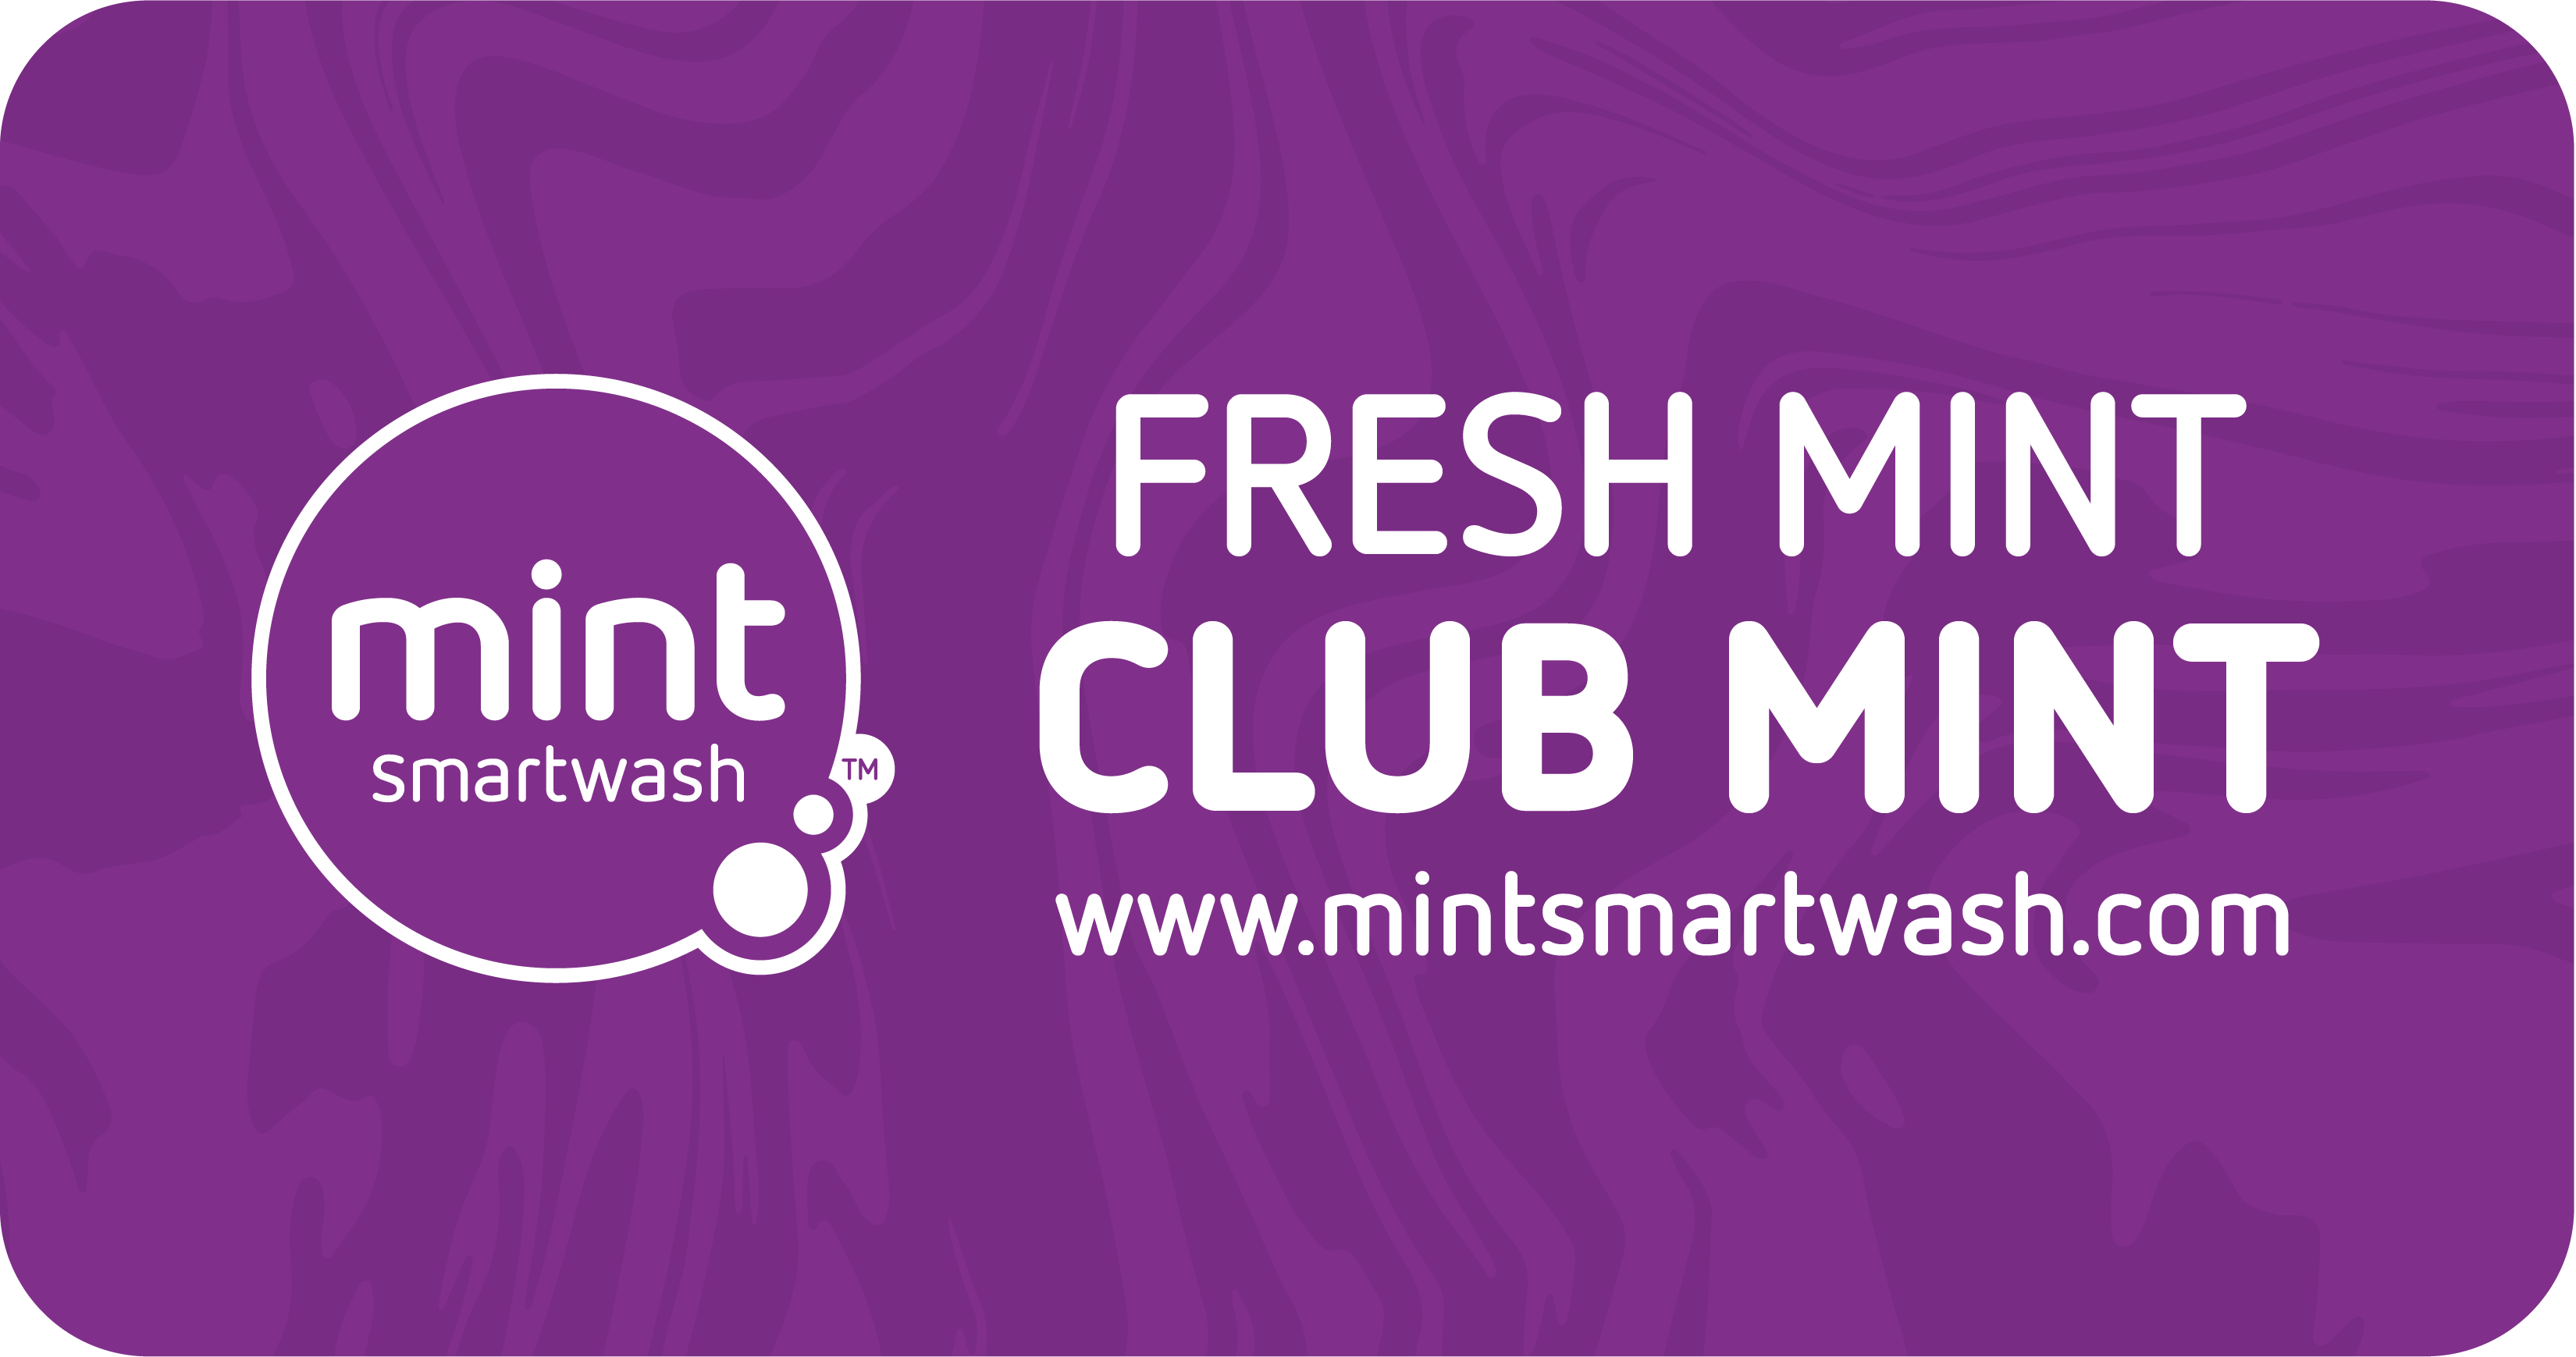 FRESH MINT - Club Mint